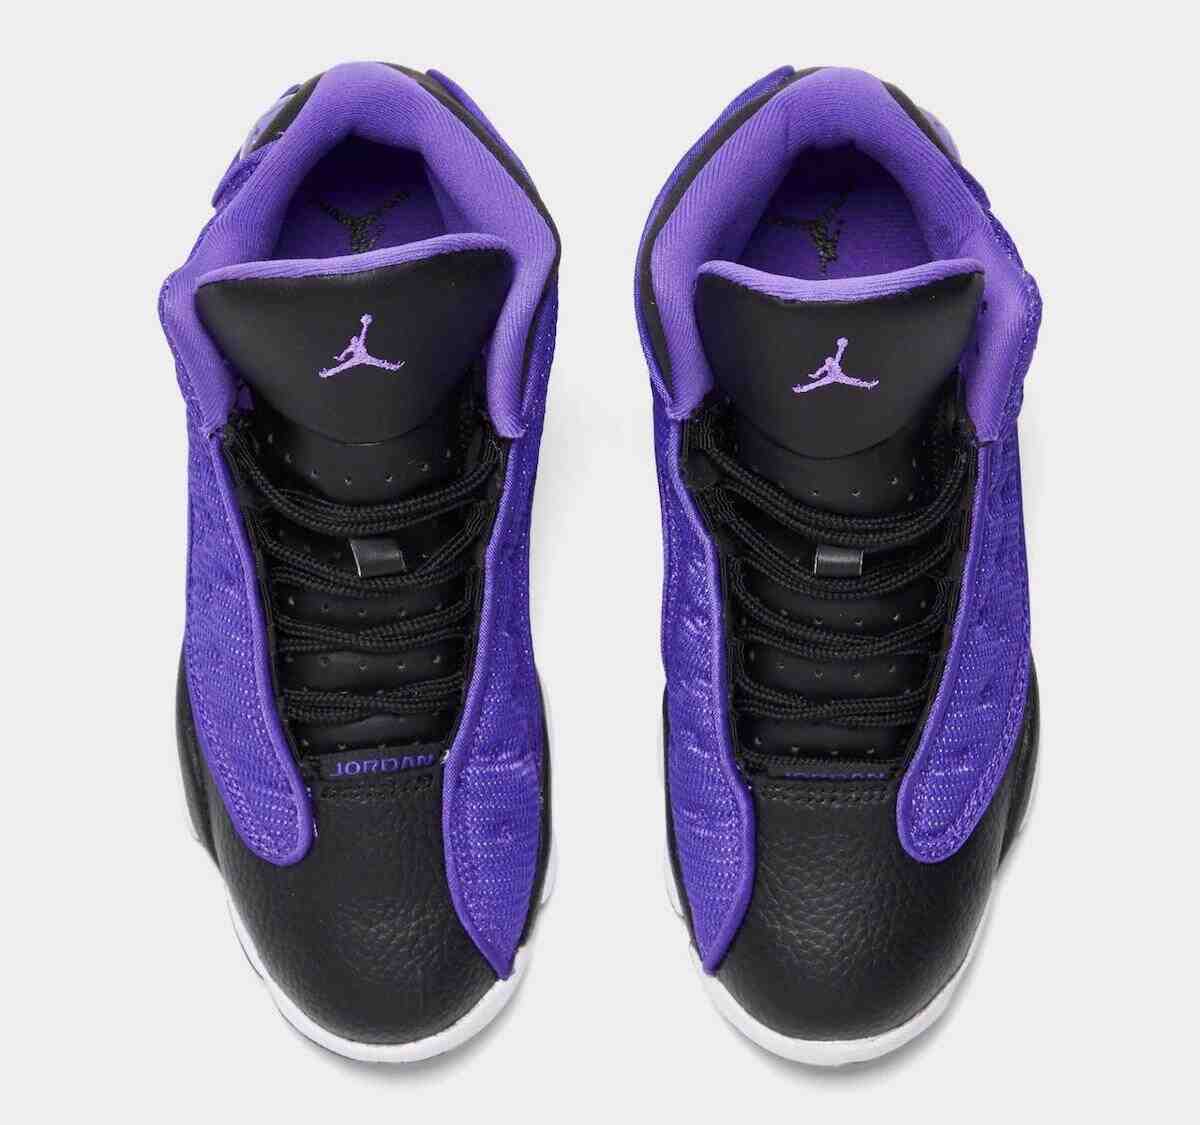 Jumpman, Jordan 13, Jordan, Air Jordan 13, Air Jordan 1, Air Jordan - Air Jordan 13 GS "紫色毒液 "10 月 2 日发布